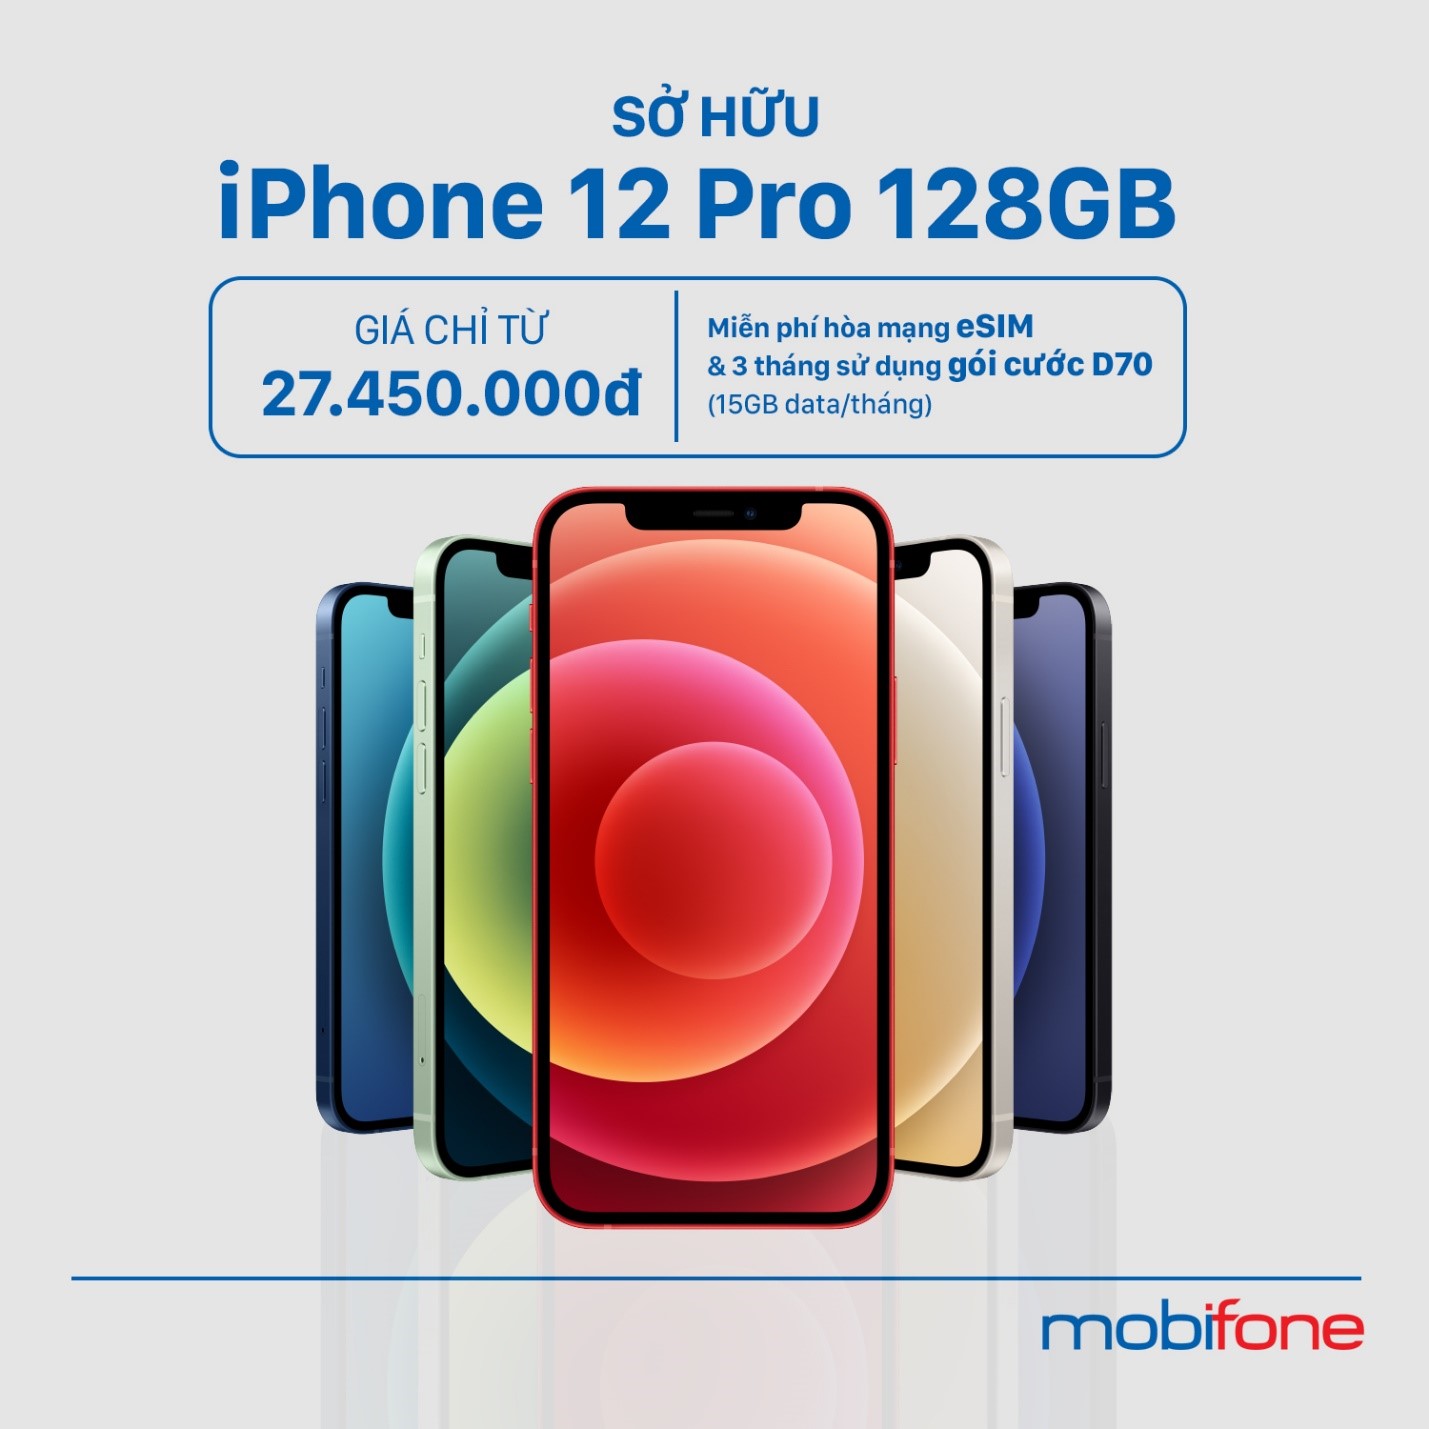 MobiFone dành nhiều ưu đãi cho khách hàng khi mua IPhone 12.